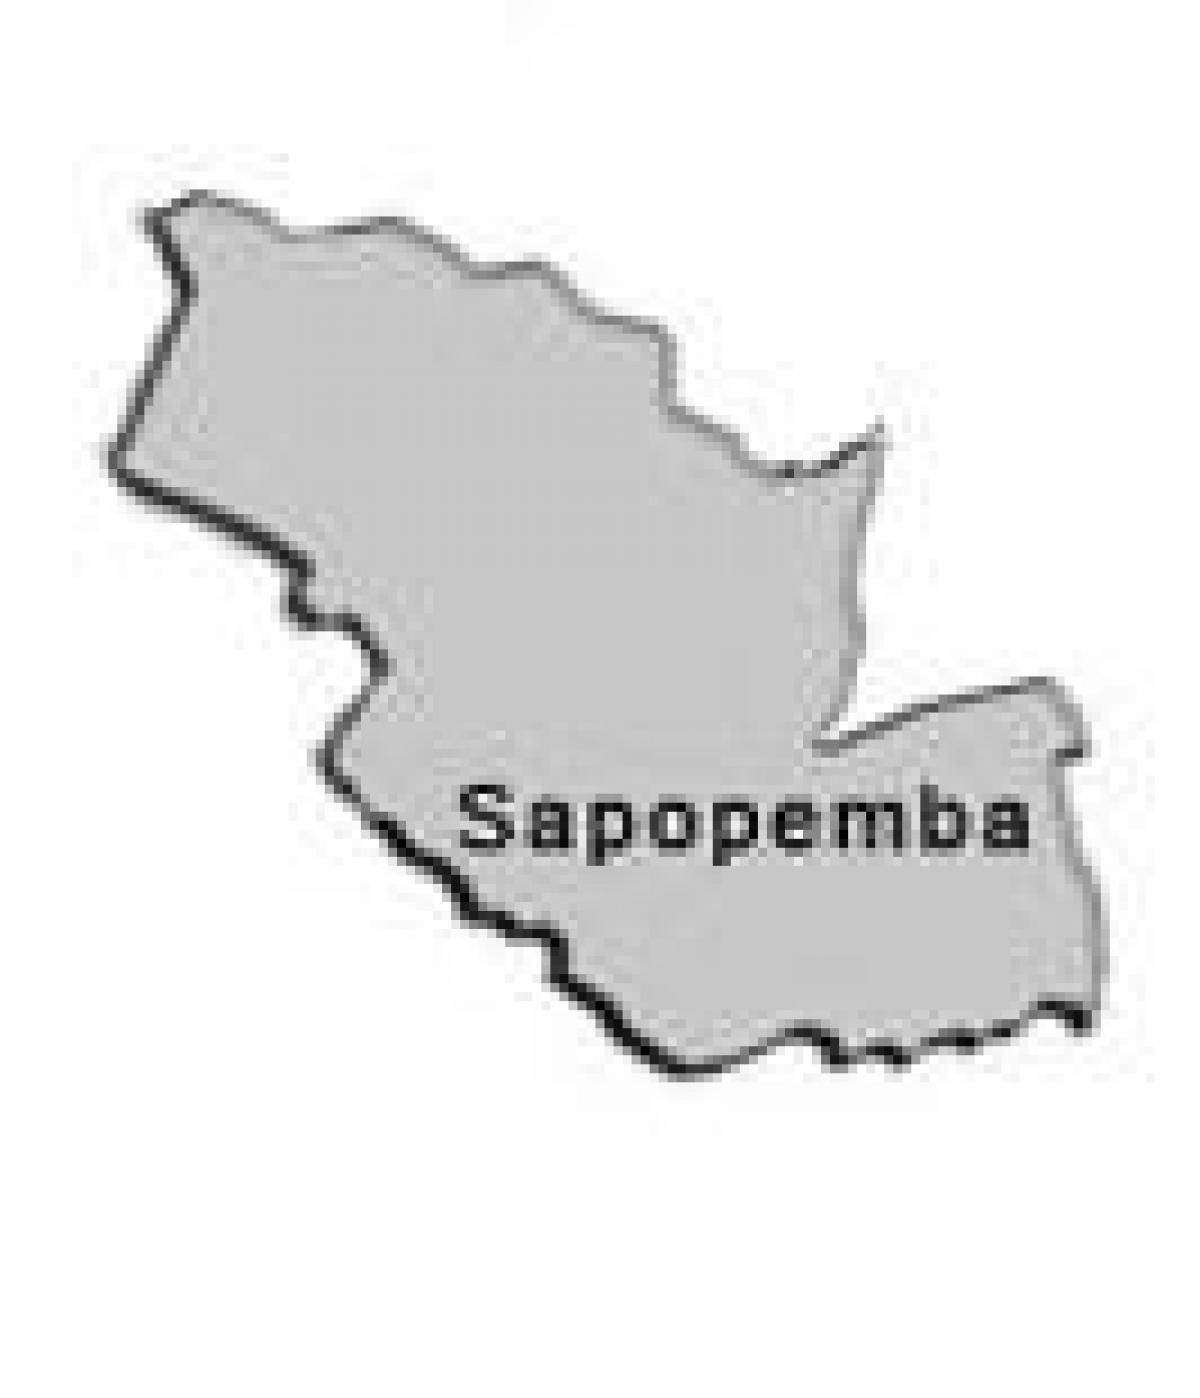 Χάρτης της Sapopembra υπο-νομού